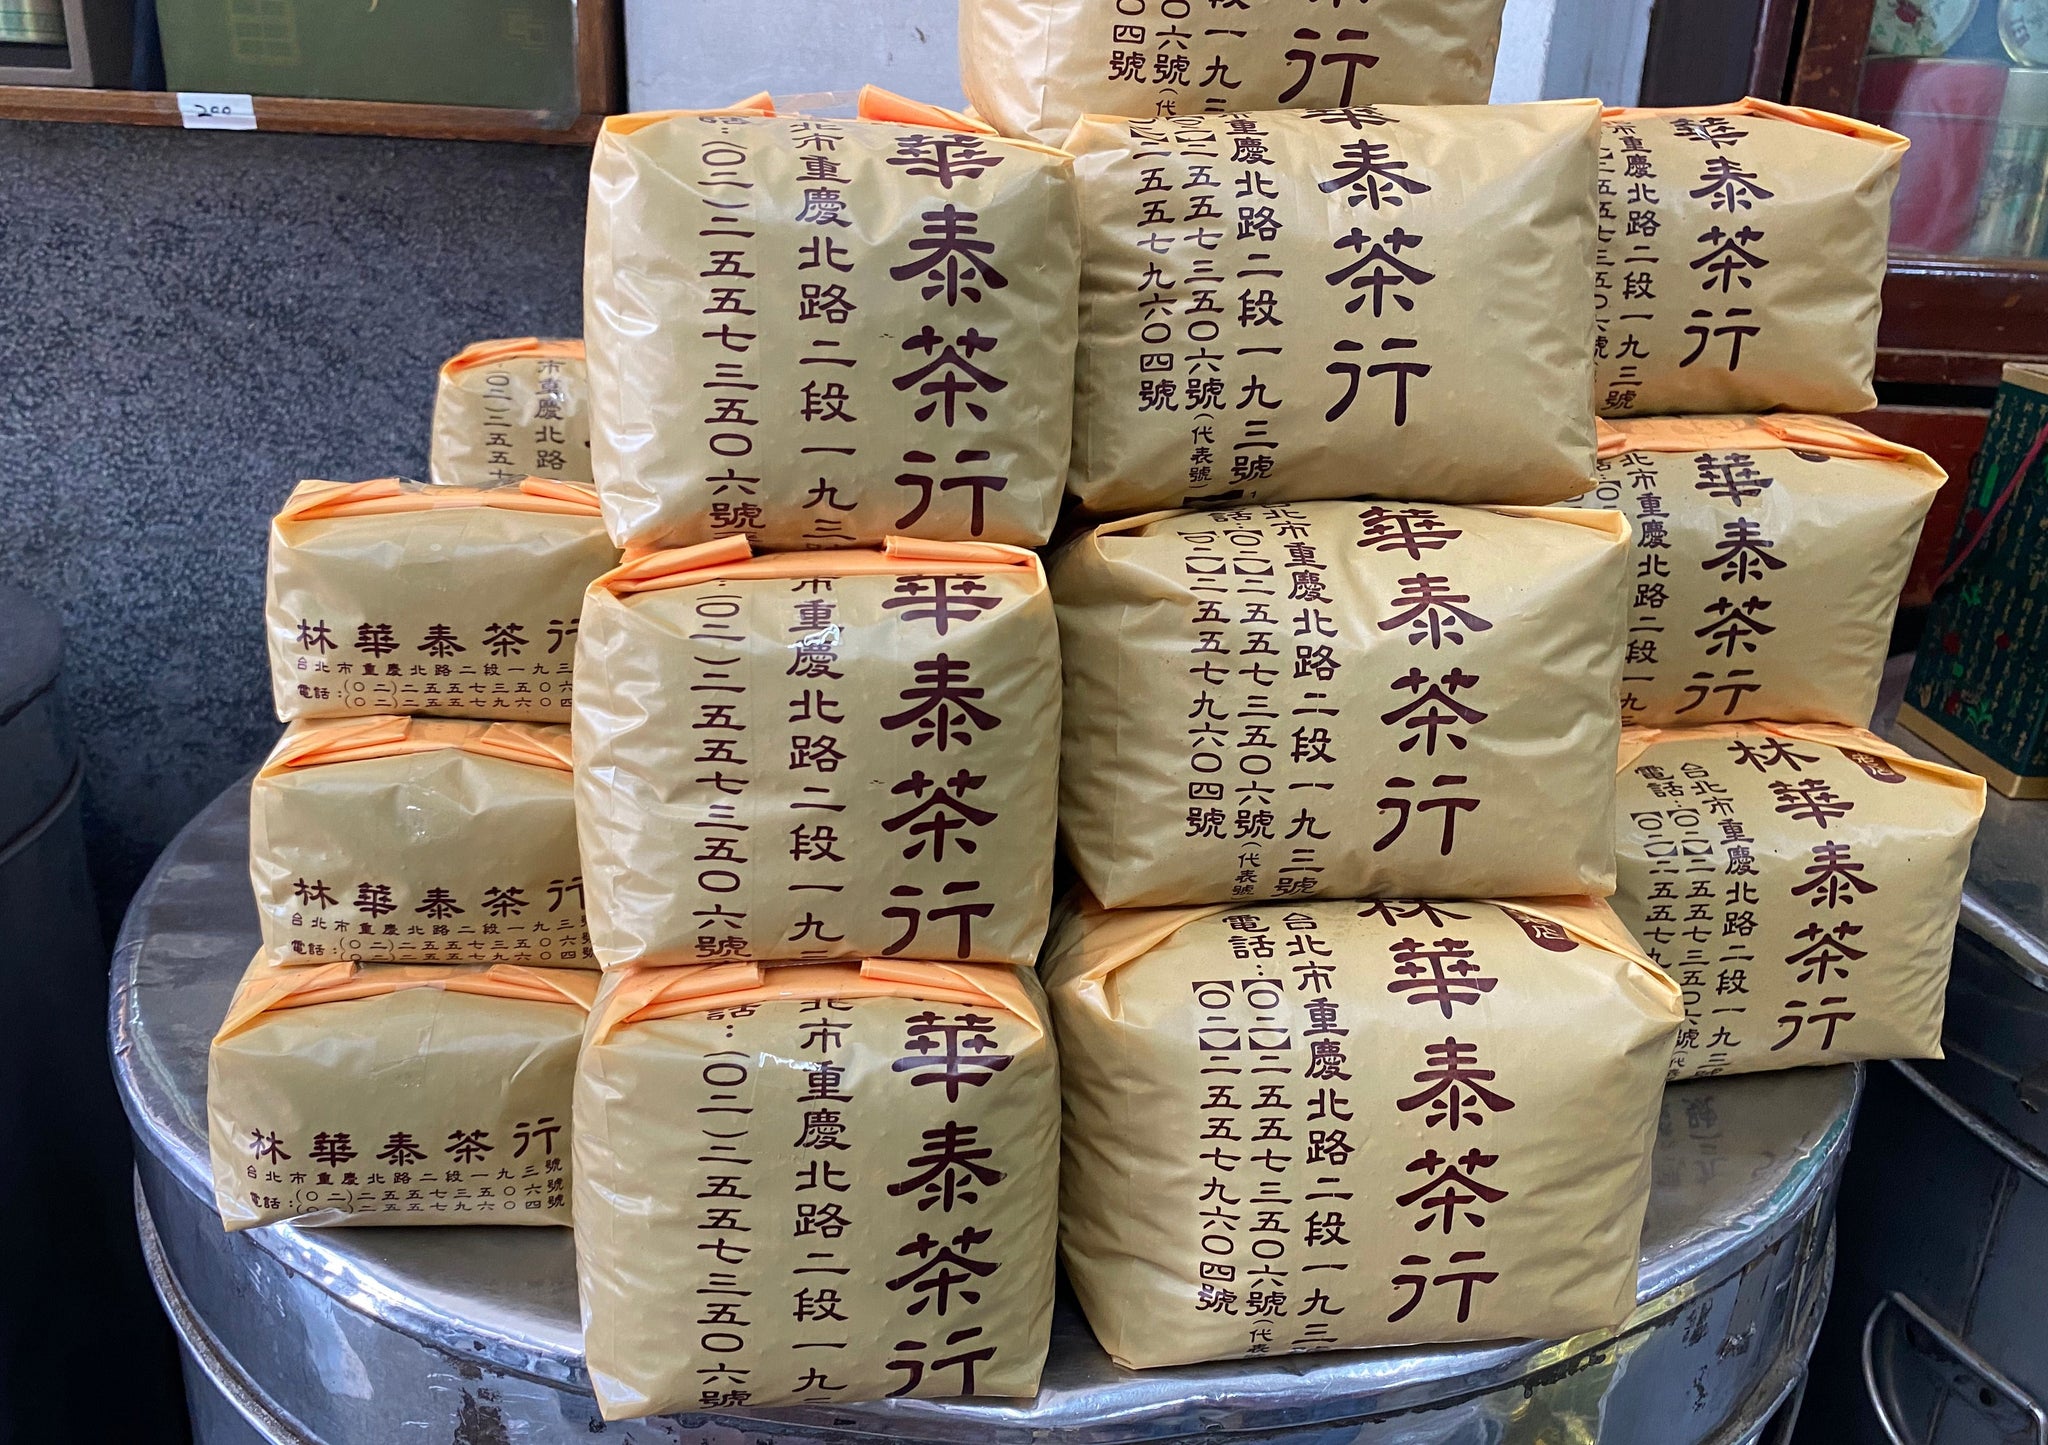 台湾で購入 林華泰茶行 凍頂烏龍茶 ジャスミン茶各150g - 酒